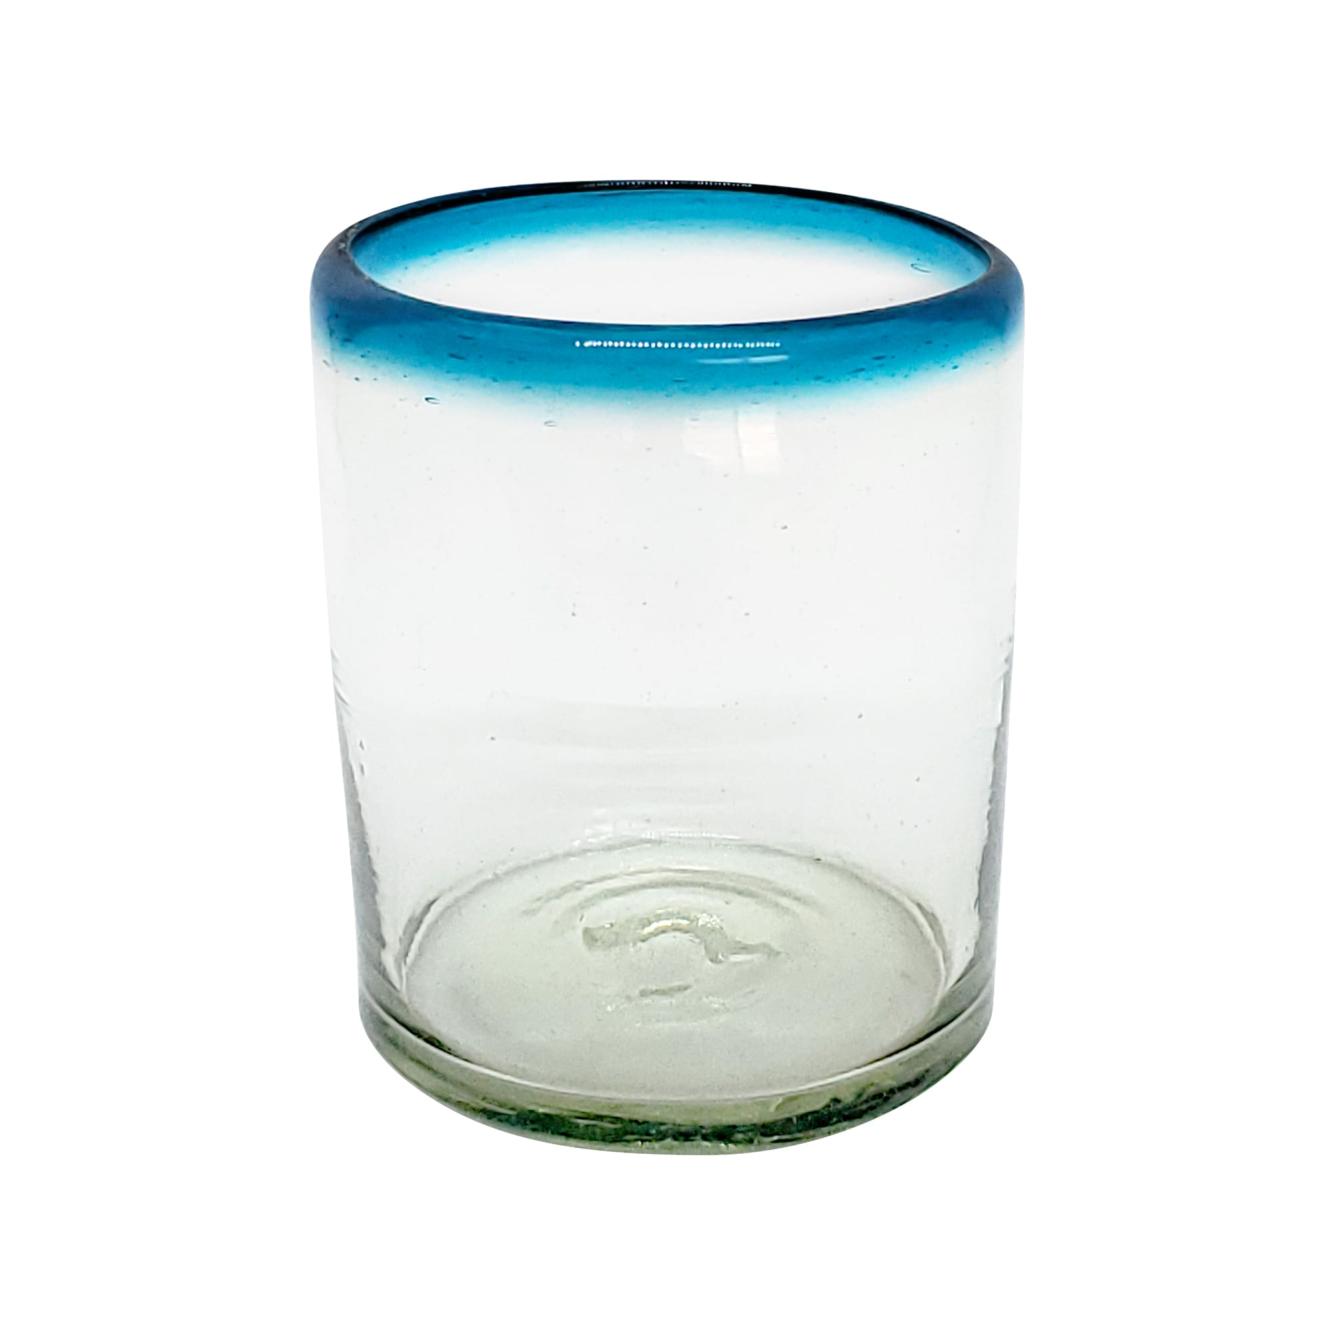 Ofertas / vasos chicos con borde azul aqua, 10 oz, Vidrio Reciclado, Libre de Plomo y Toxinas / stos vasos chicos son un gran complemento para su juego de jarra y vasos grandes.